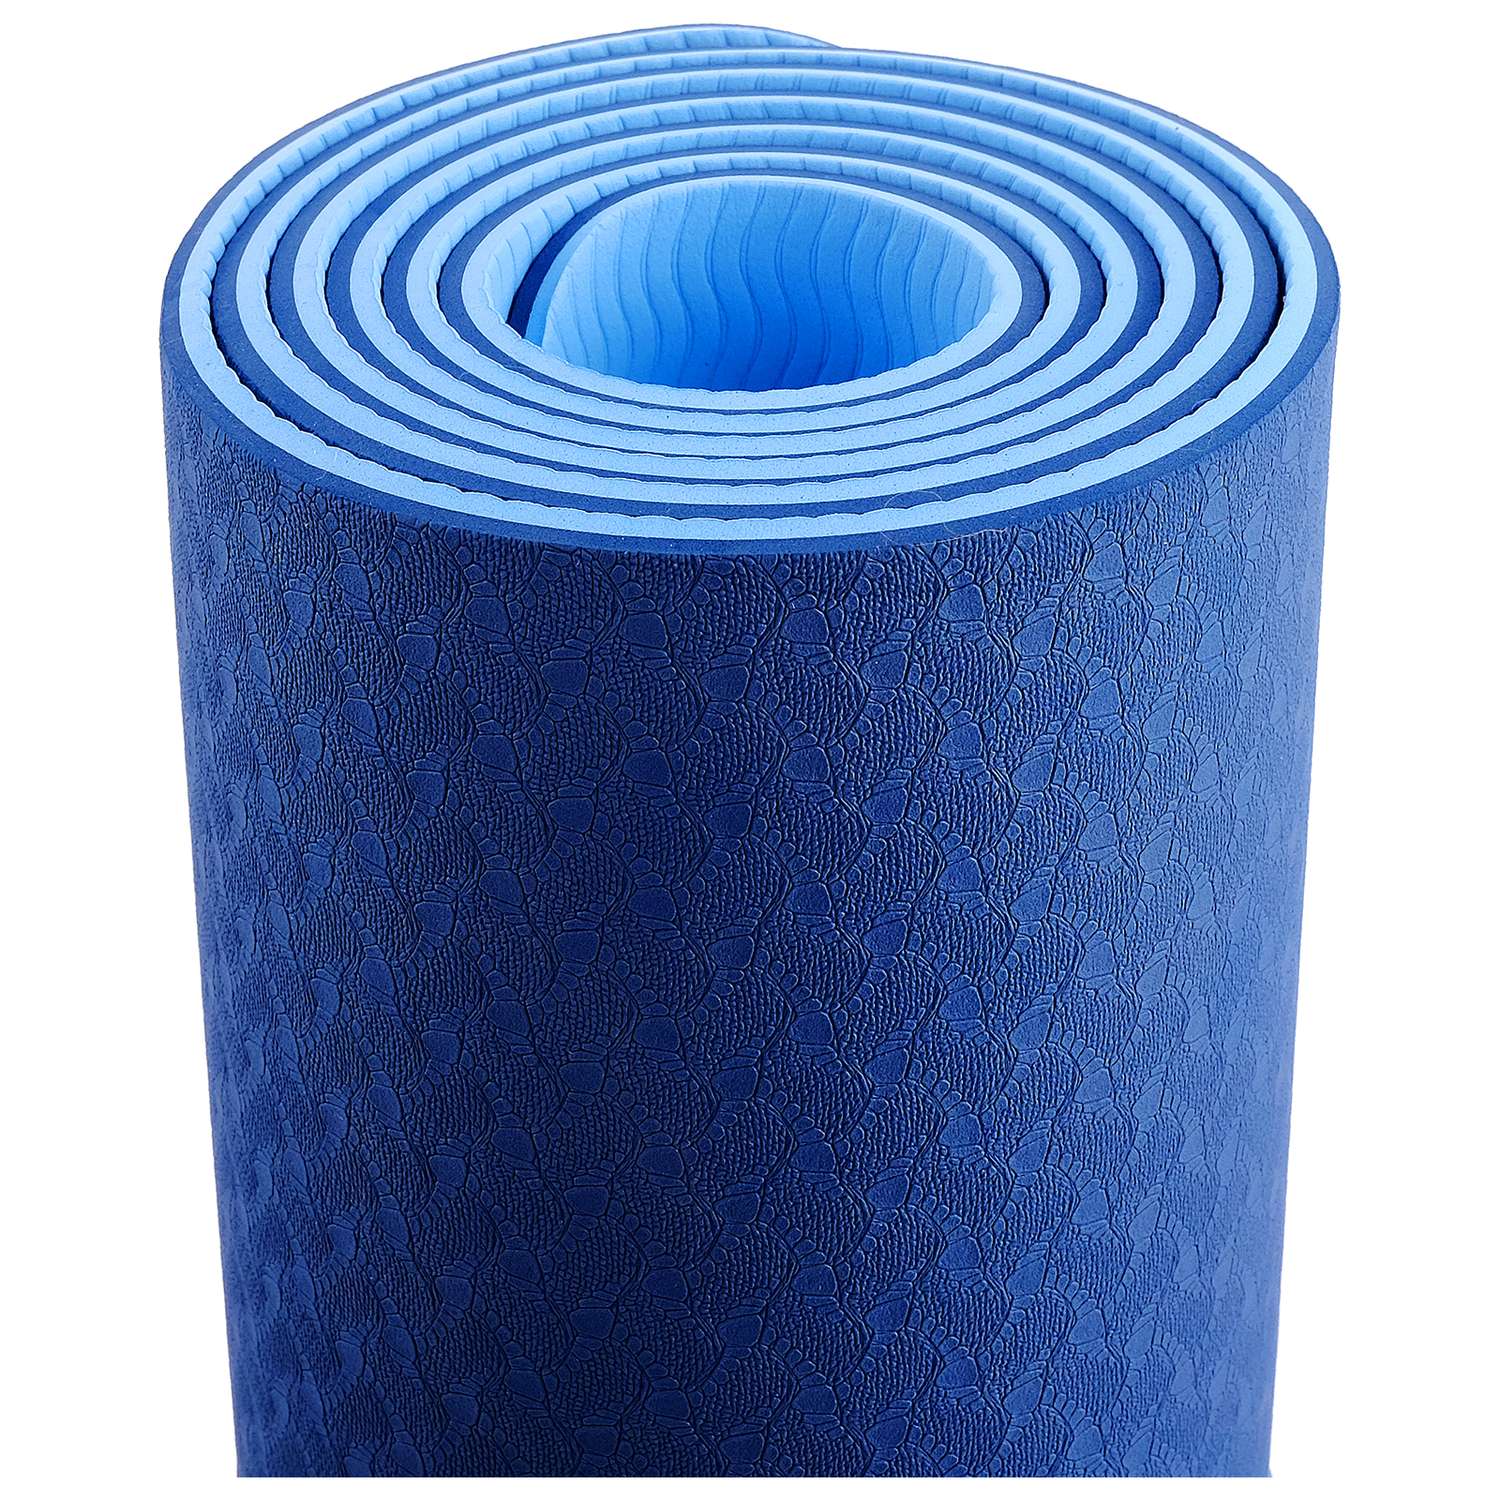 Коврик Sangh Для йоги двухцветный синий голубой - фото 3